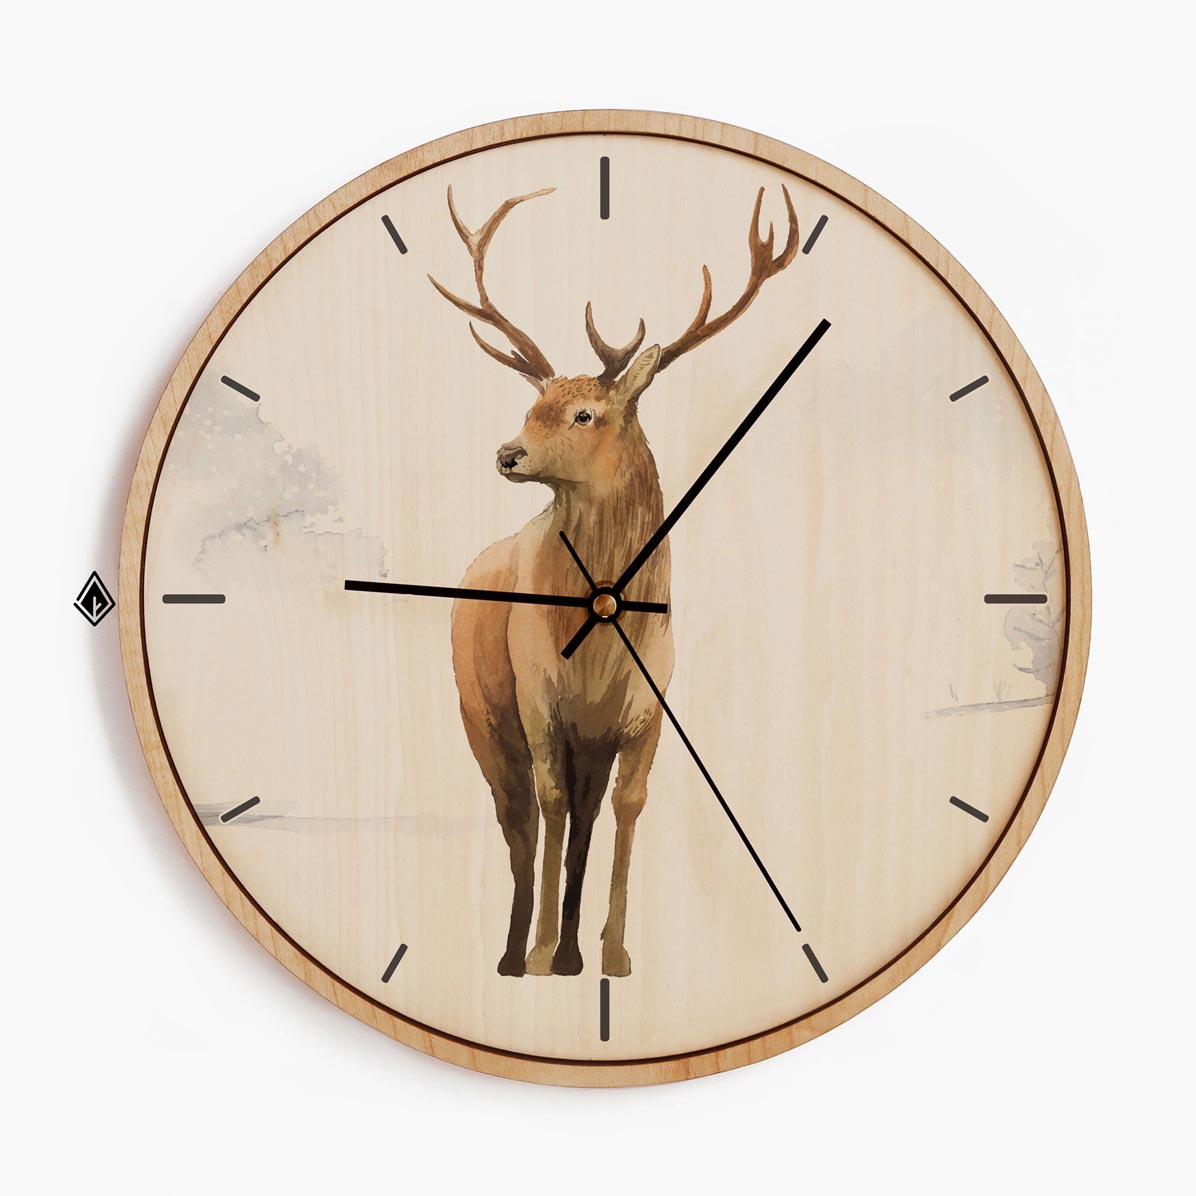 Wooden Wall Clocks Deer in Snow